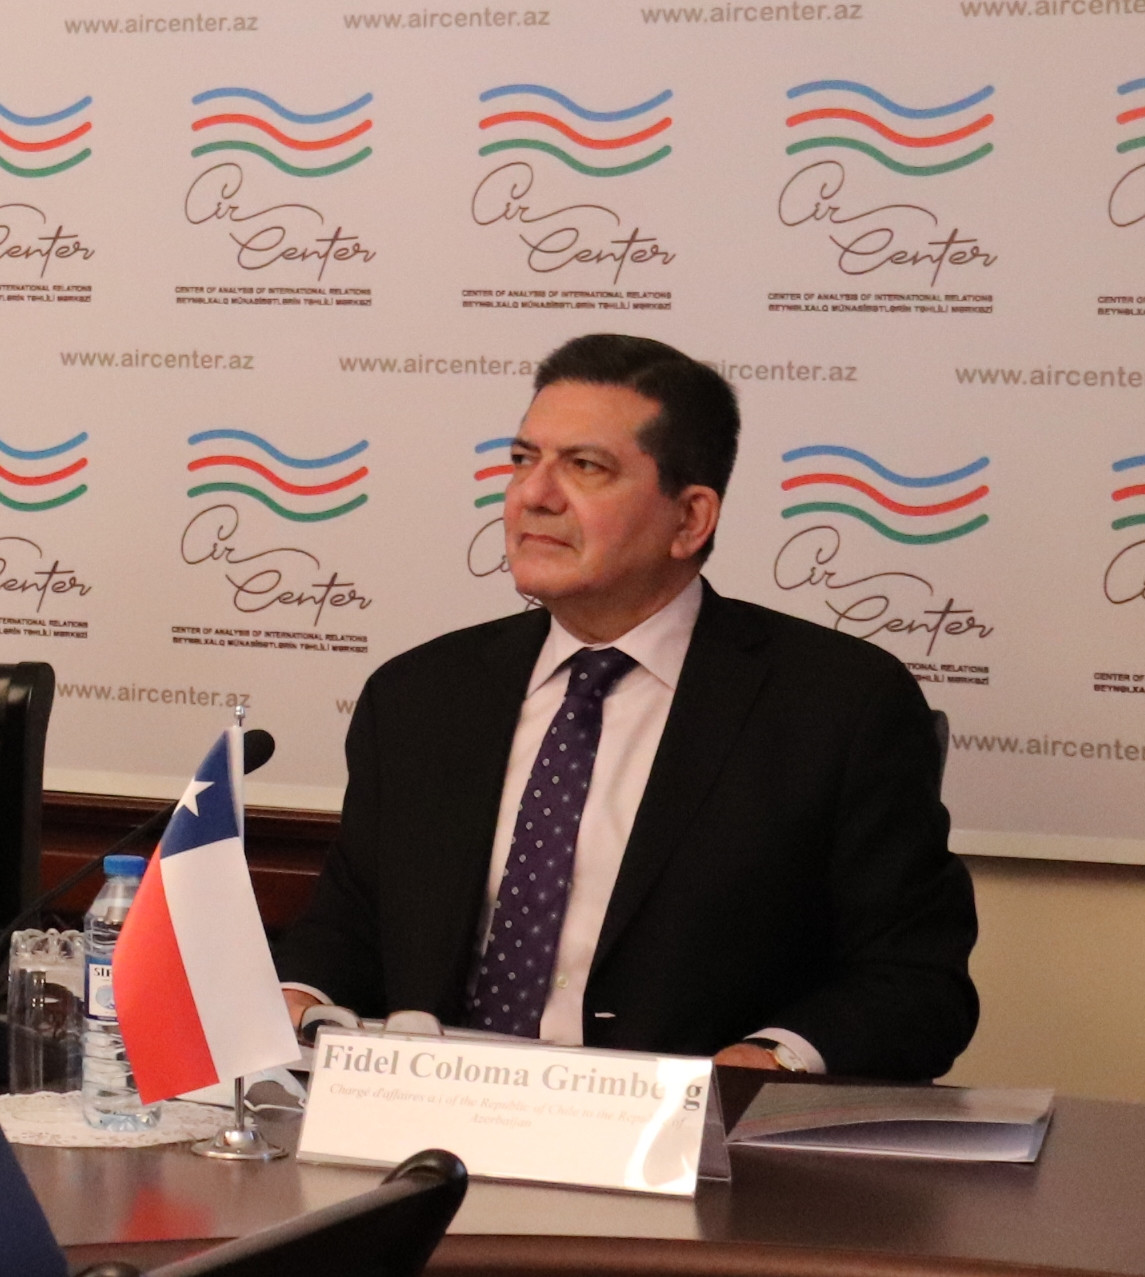 Состоялся круглый стол на тему «Тихий океан как связующее звено между Азербайджаном и Латинской Америкой»